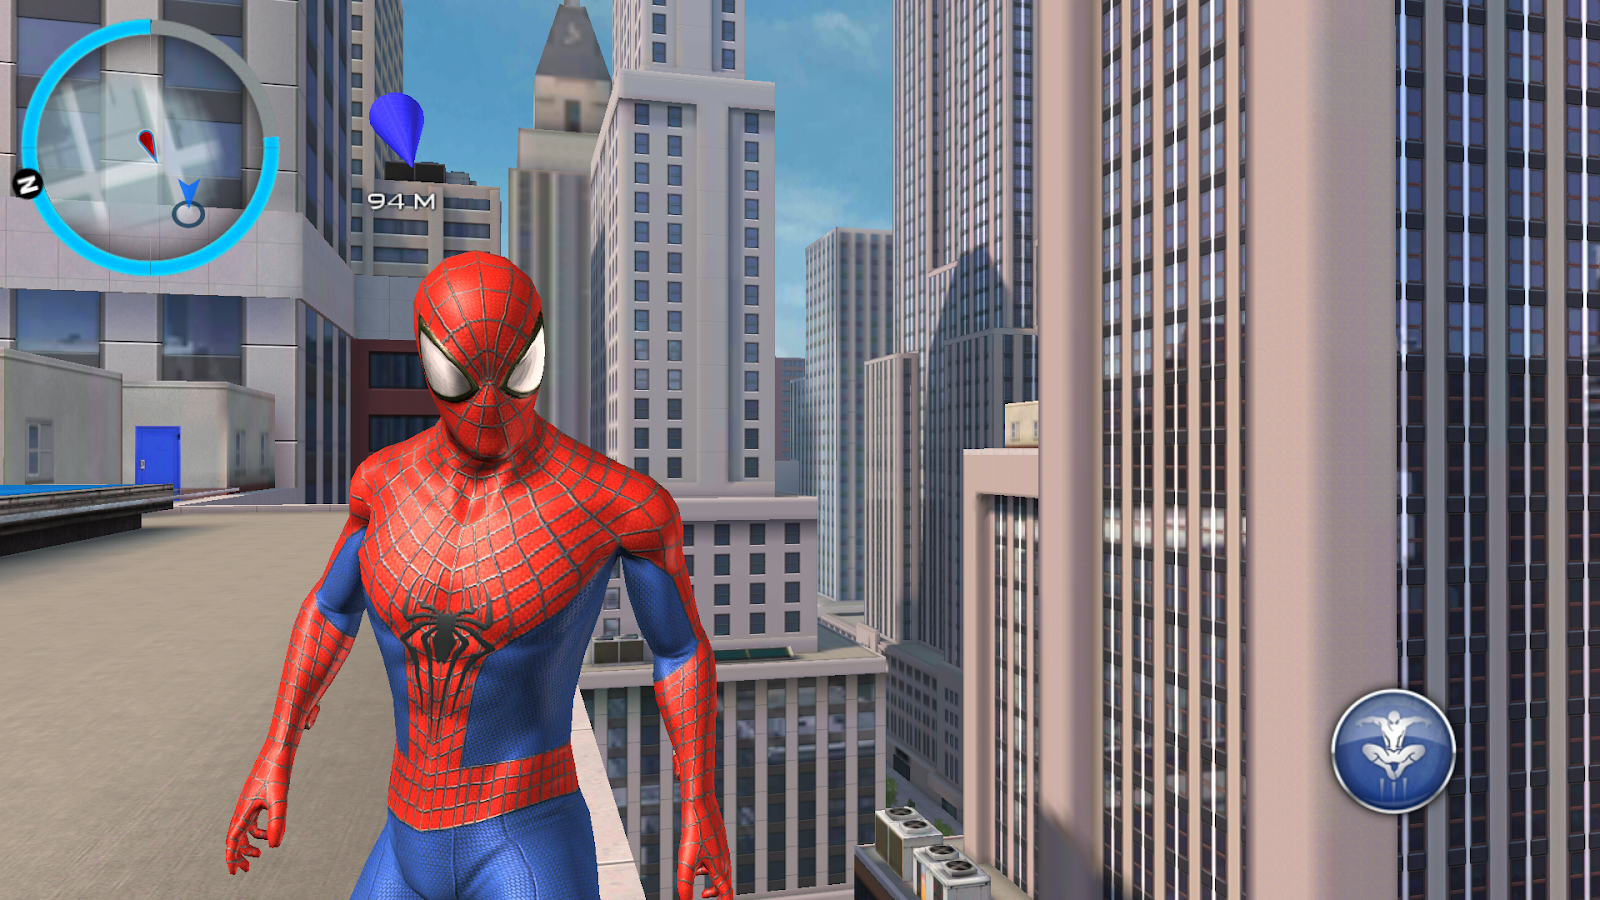 The man игра на андроид. Spider-man 2 (игра, 2004). Spider-man 3 (игра). Игра Спайдер Мэн 2023. Новый человек паук 1 игра.